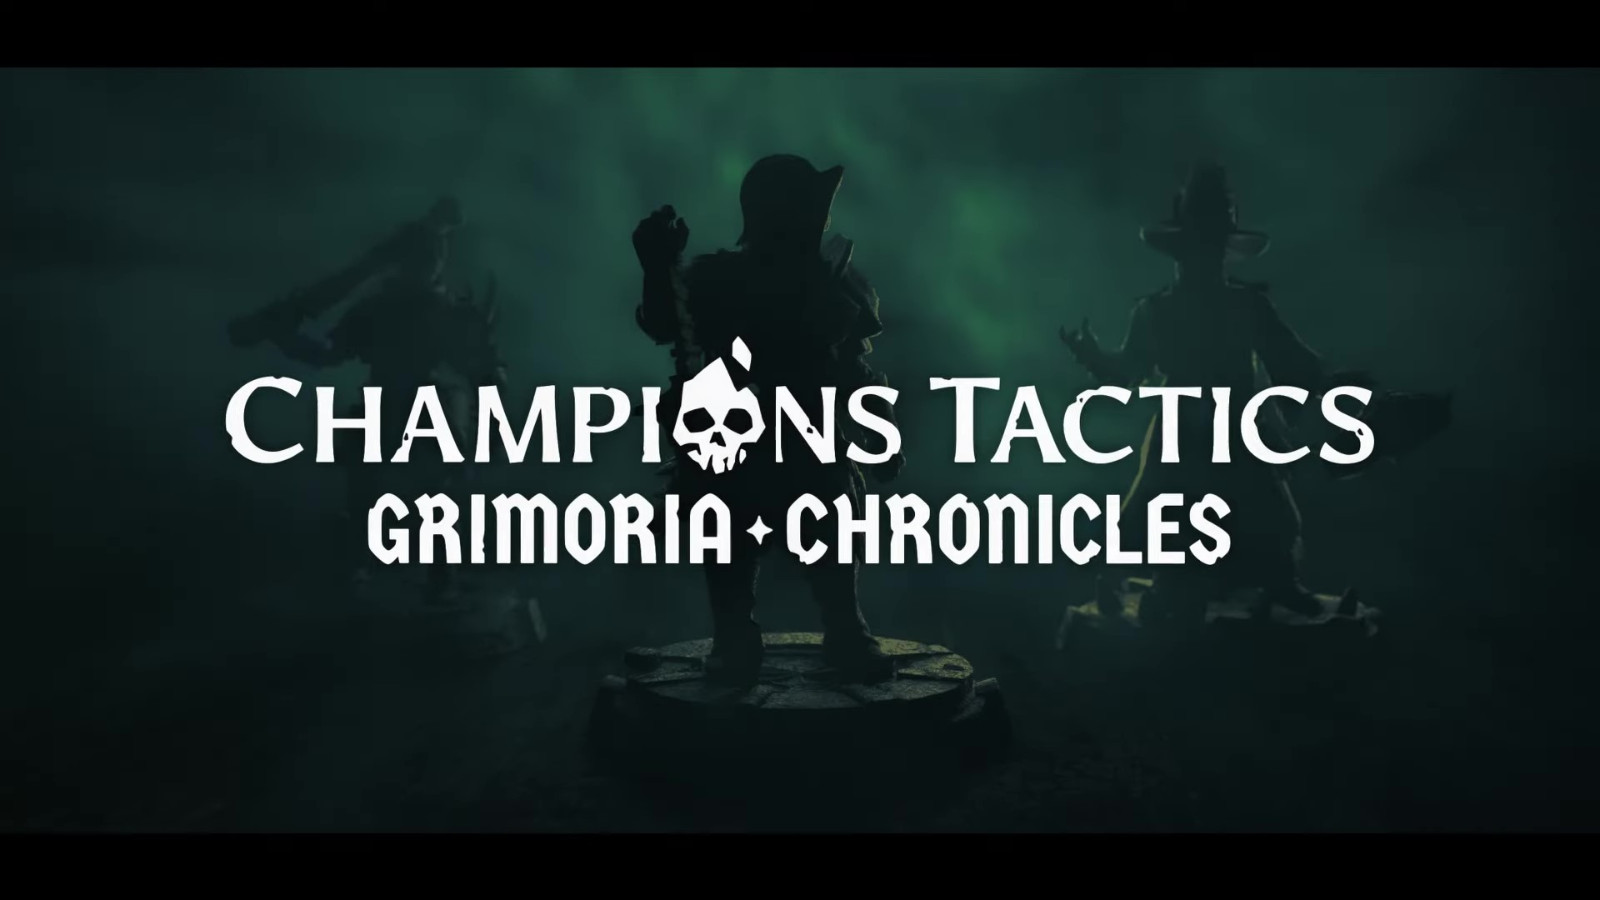 育碧区块链游戏Champions Tactics预告公开 仅登陆PC_6